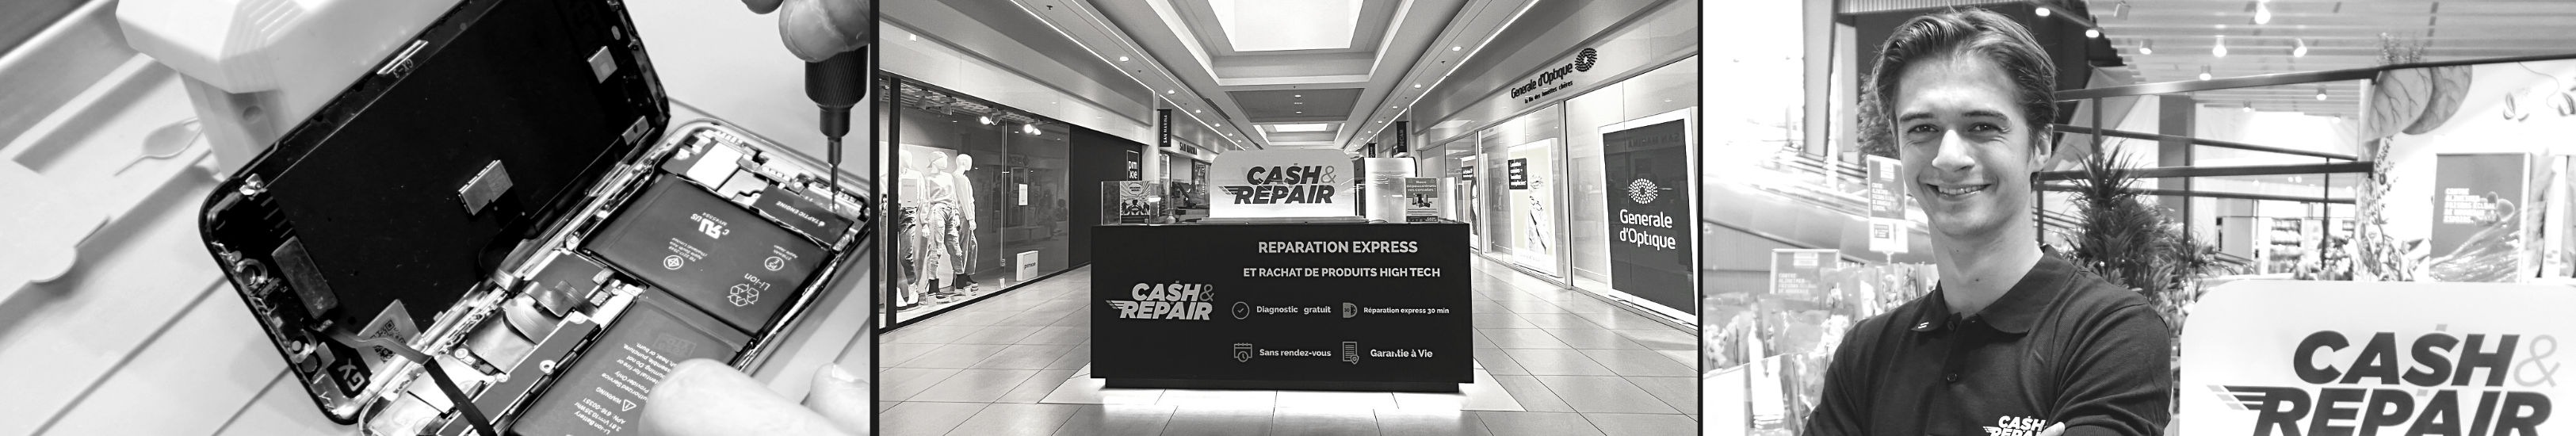 - Atelier de réparation Cash and Repair La Roche-sur-Yon Sud